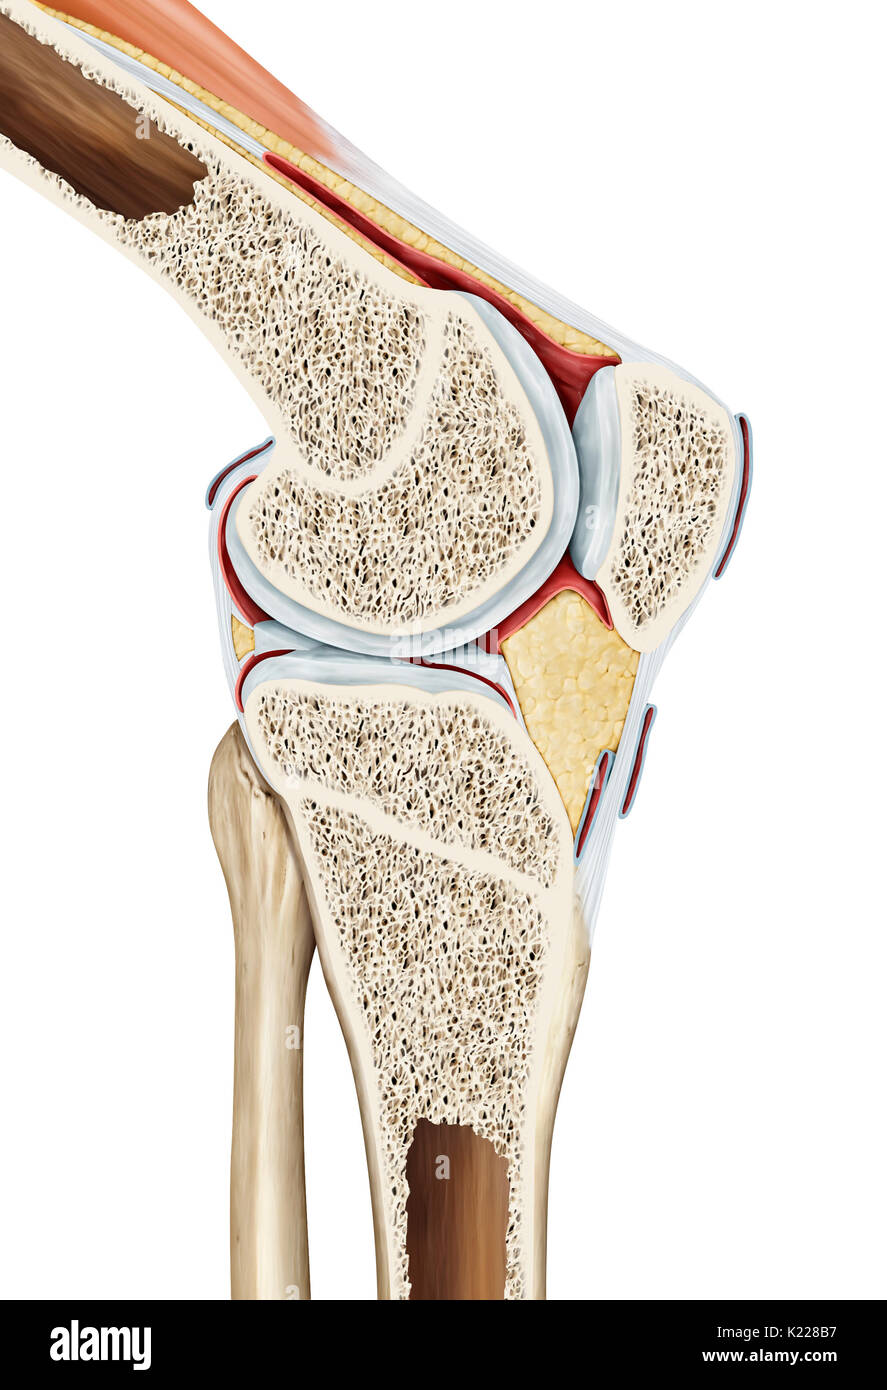 Die synovial Joint des Knie links den Oberschenkelknochen mit dem Schienbein, Wadenbein, und der patella. Als ein Ergebnis, das Knie bezieht sich auf den Bereich des Körpers, wo die Oberschenkel das Kalb entspricht. Oft verwendet, es ist verstärkt und durch mehrere Bänder und Menisken stabilisiert. Stockfoto